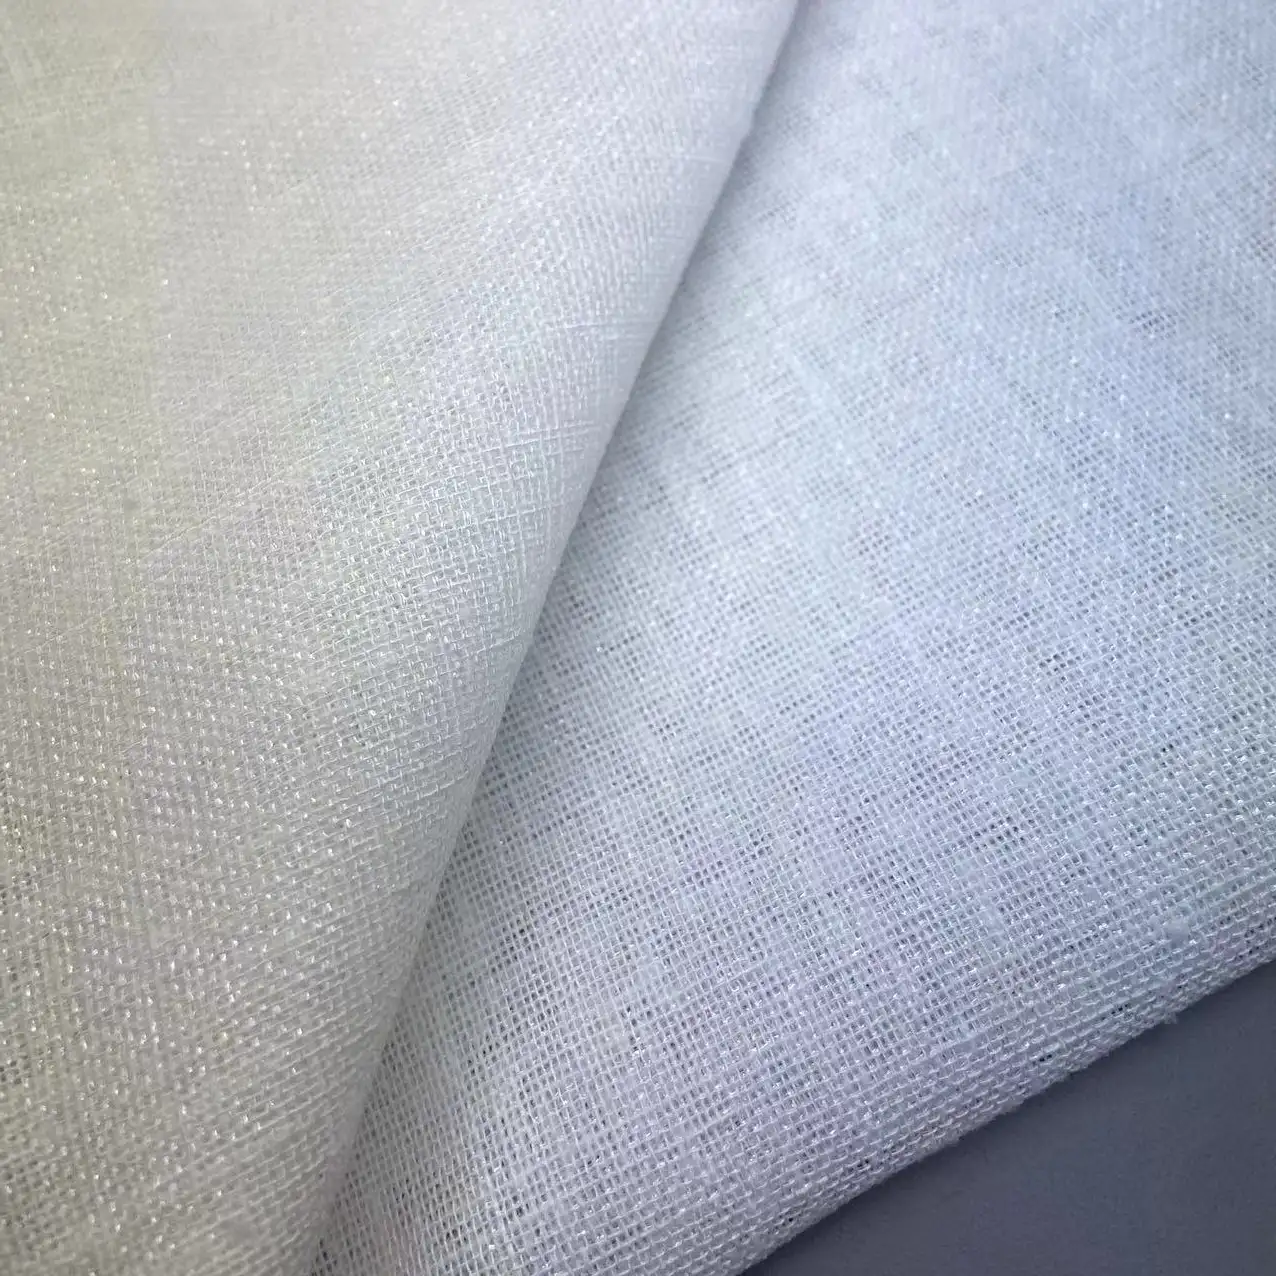 Tirai Voile Linen gaya bersinar 300M, kain bahan jaring untuk gorden jendela